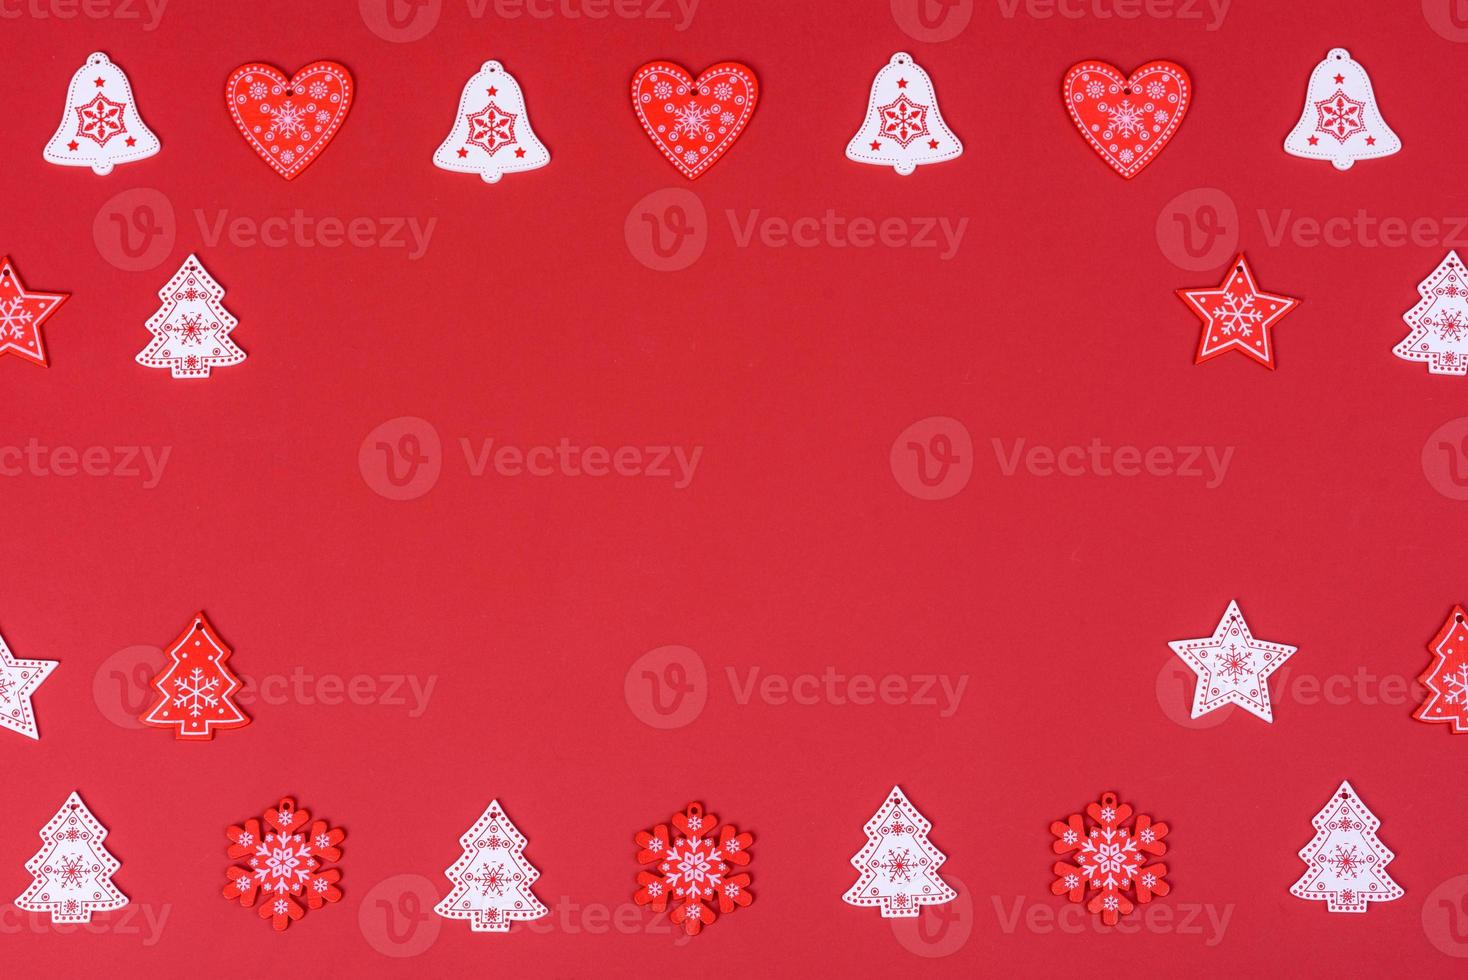 elementos vermelhos e brancos que são usados para decorar a árvore de natal foto